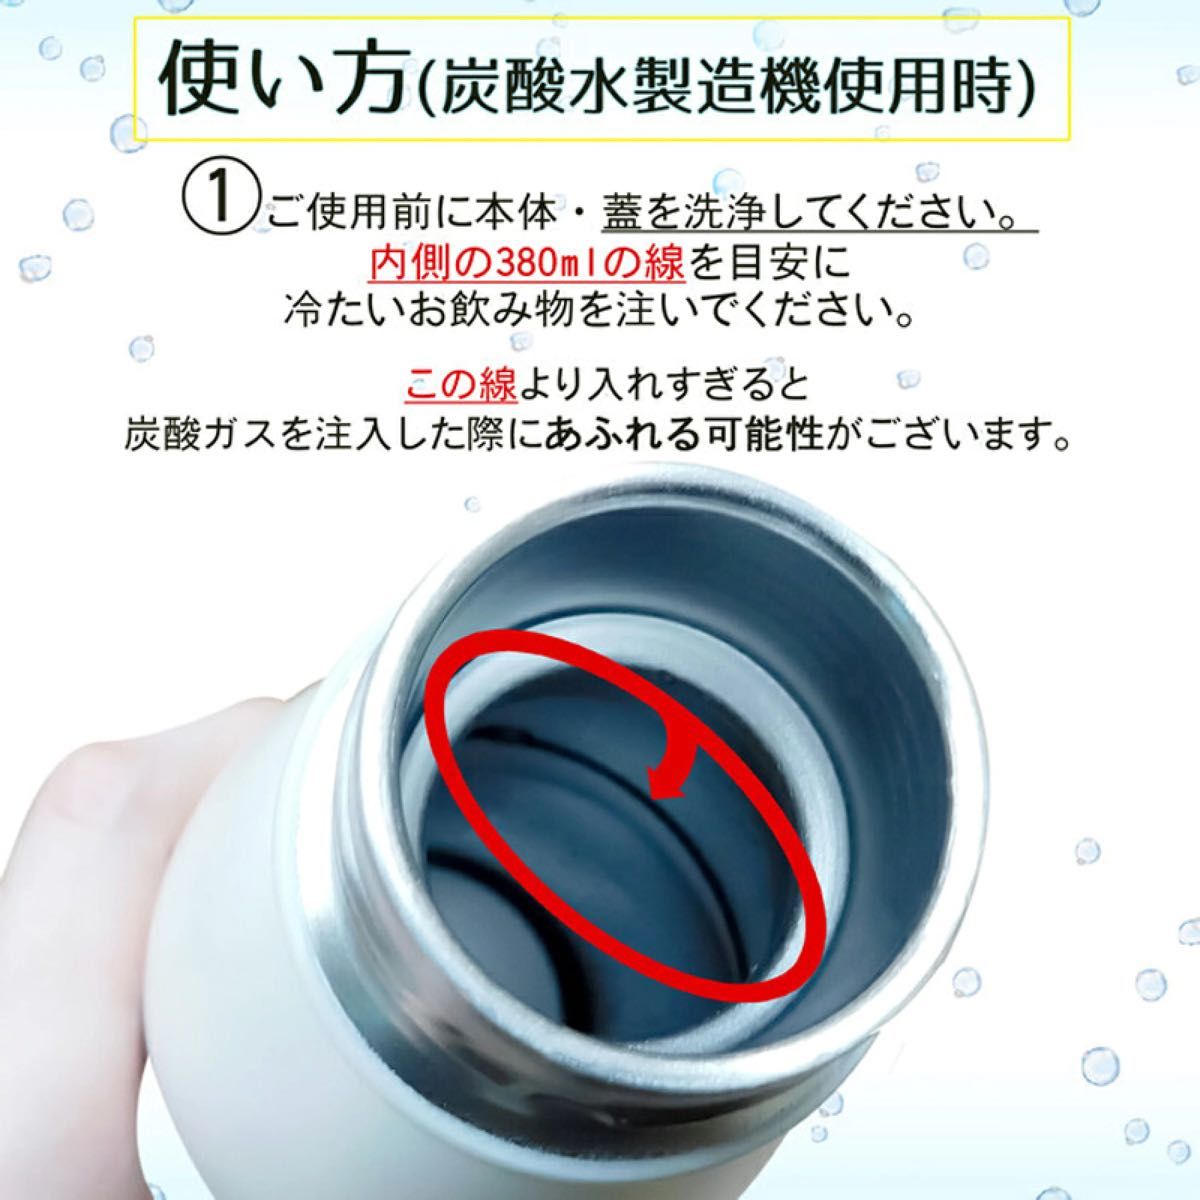 【mofusand】炭酸飲料対応 ステンレスボトル530ml【ピザ】